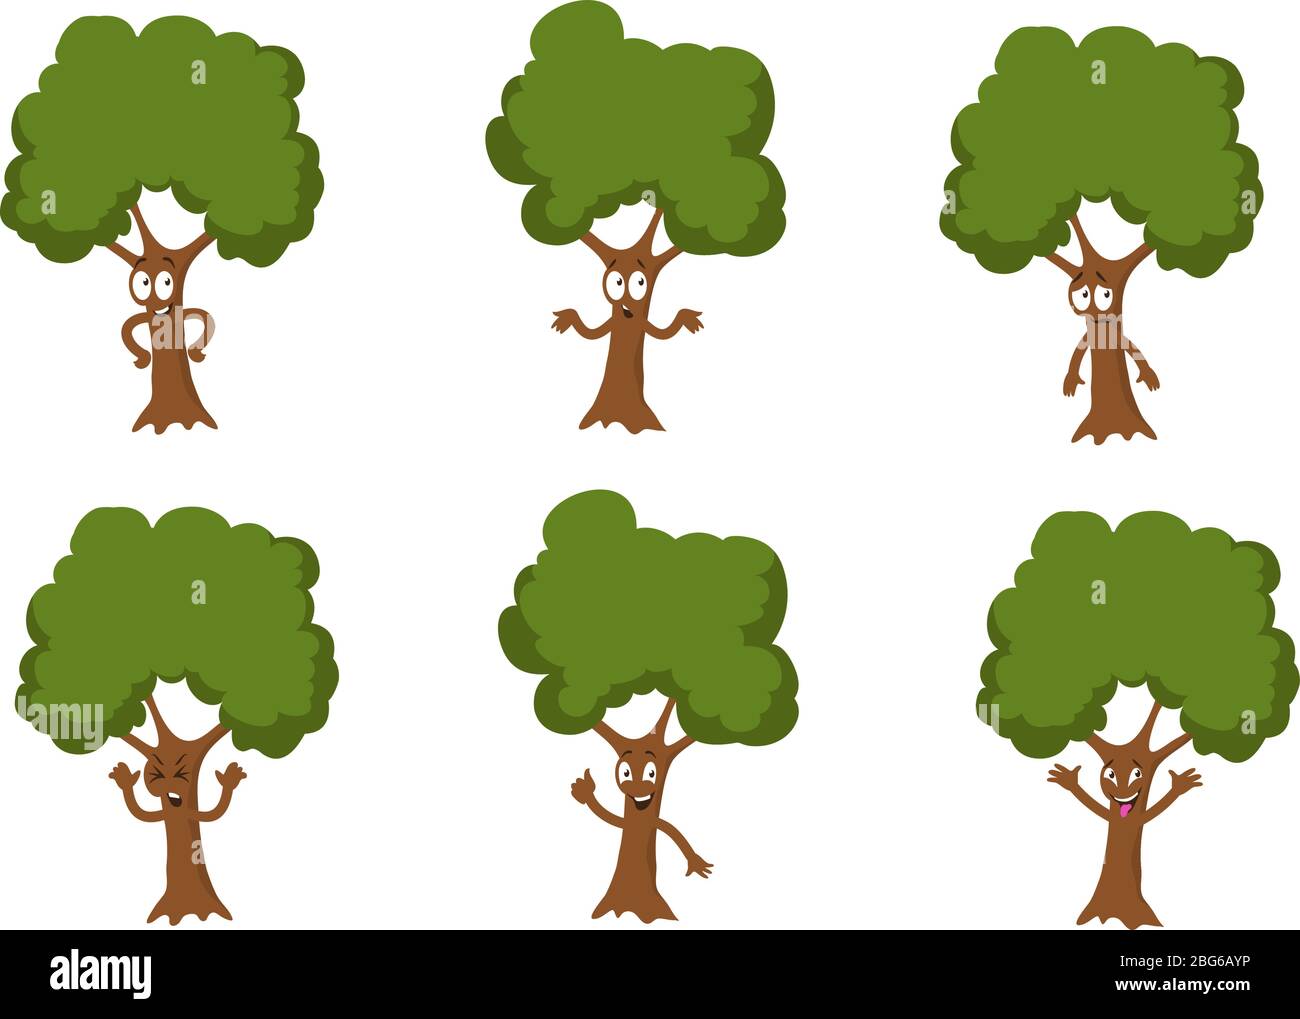 Cartoon lustige grüne Baum Vektor Zeichen isoliert. Cartoon Baum grünen Charakter mit niedlichen Gesicht Illustration Stock Vektor